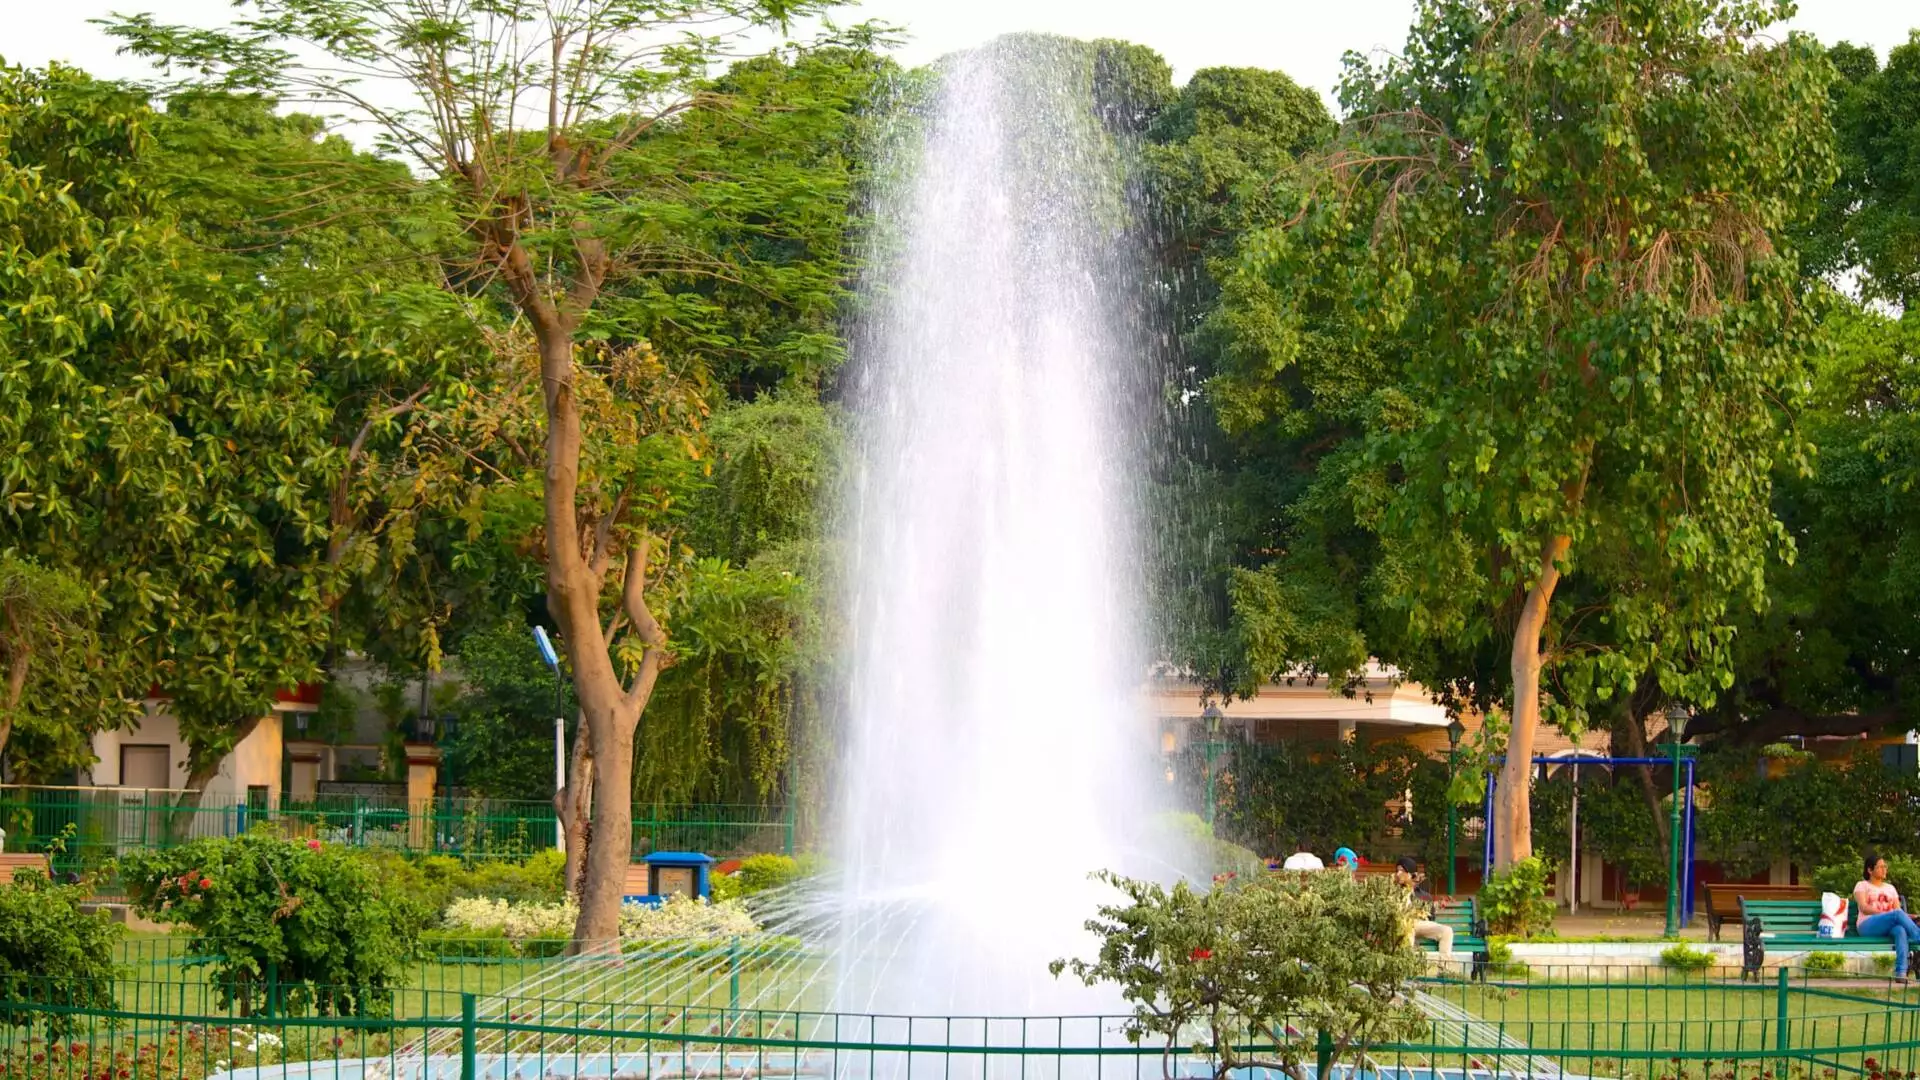 Nicco Park On Kolkata In India